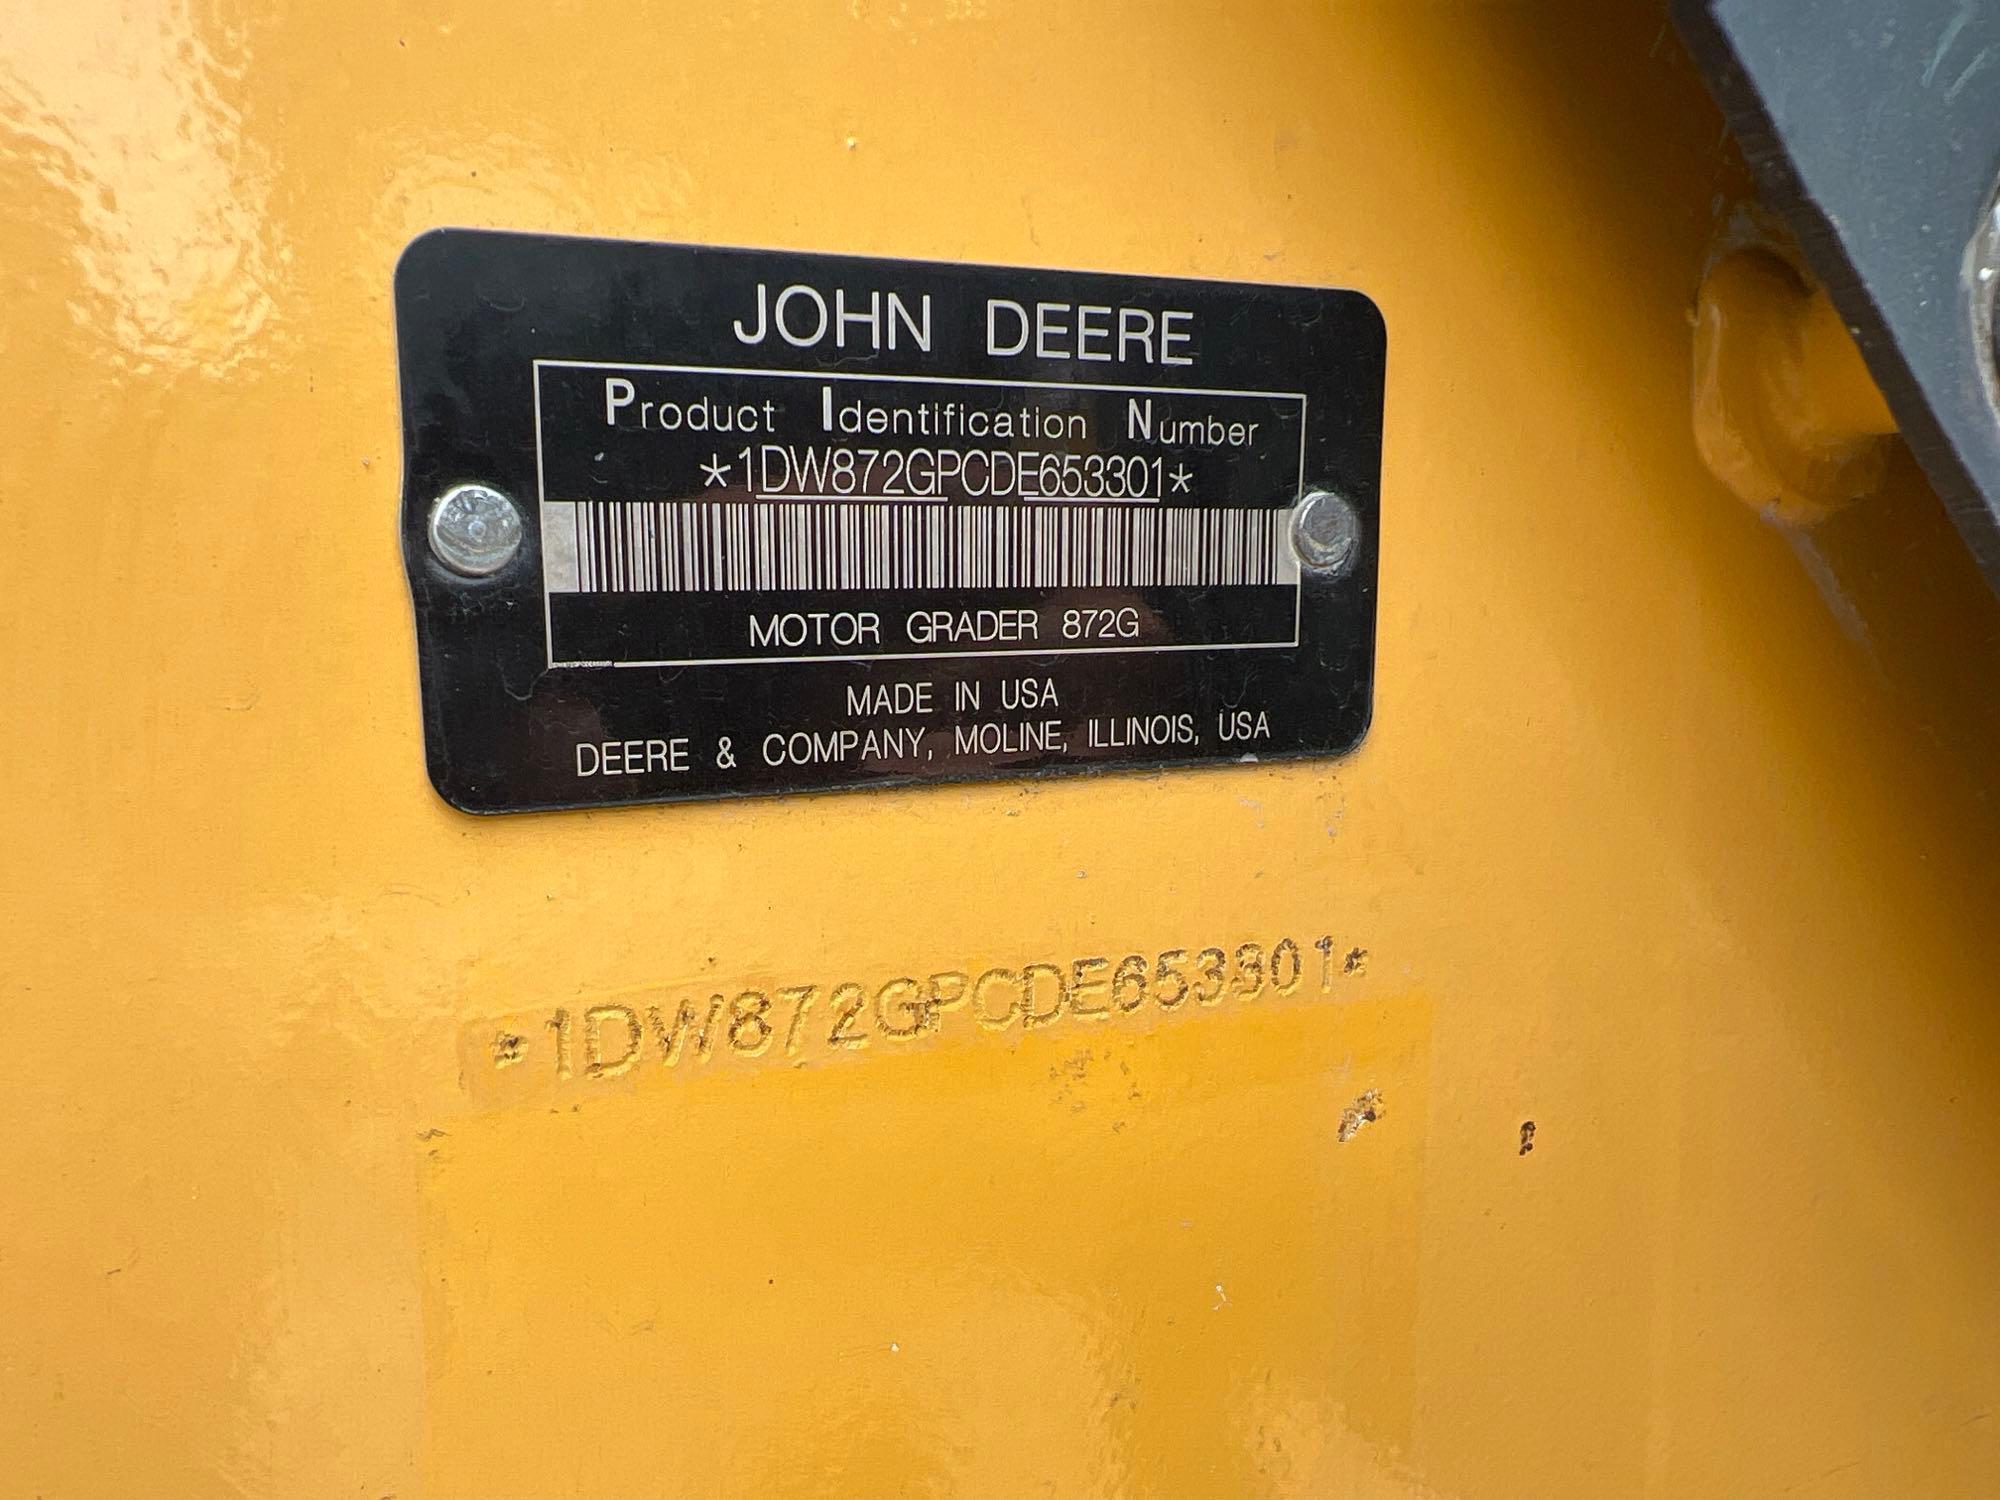 2016 JOHN DEERE 872GP MOTOR GRADER SN:653301 powered by John Deere diesel engine, equipped with